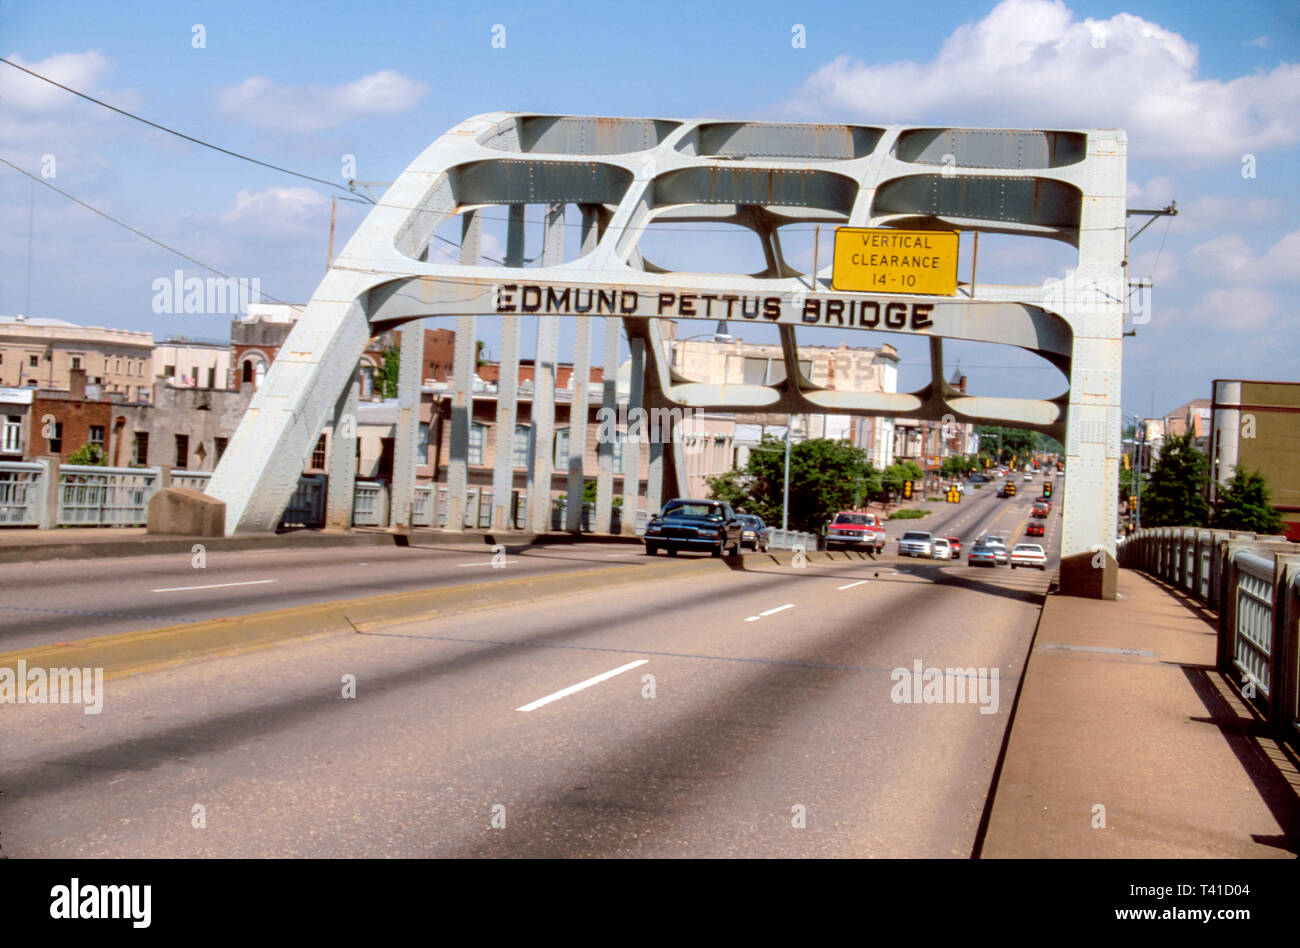 Alabama Selma Edmund Pettus Bridge, Überführung, Link, Verbindung, Bloody Sunday Civil Right märz Website 1965 Voting Rights Act AL068, Besucher reisen Stockfoto